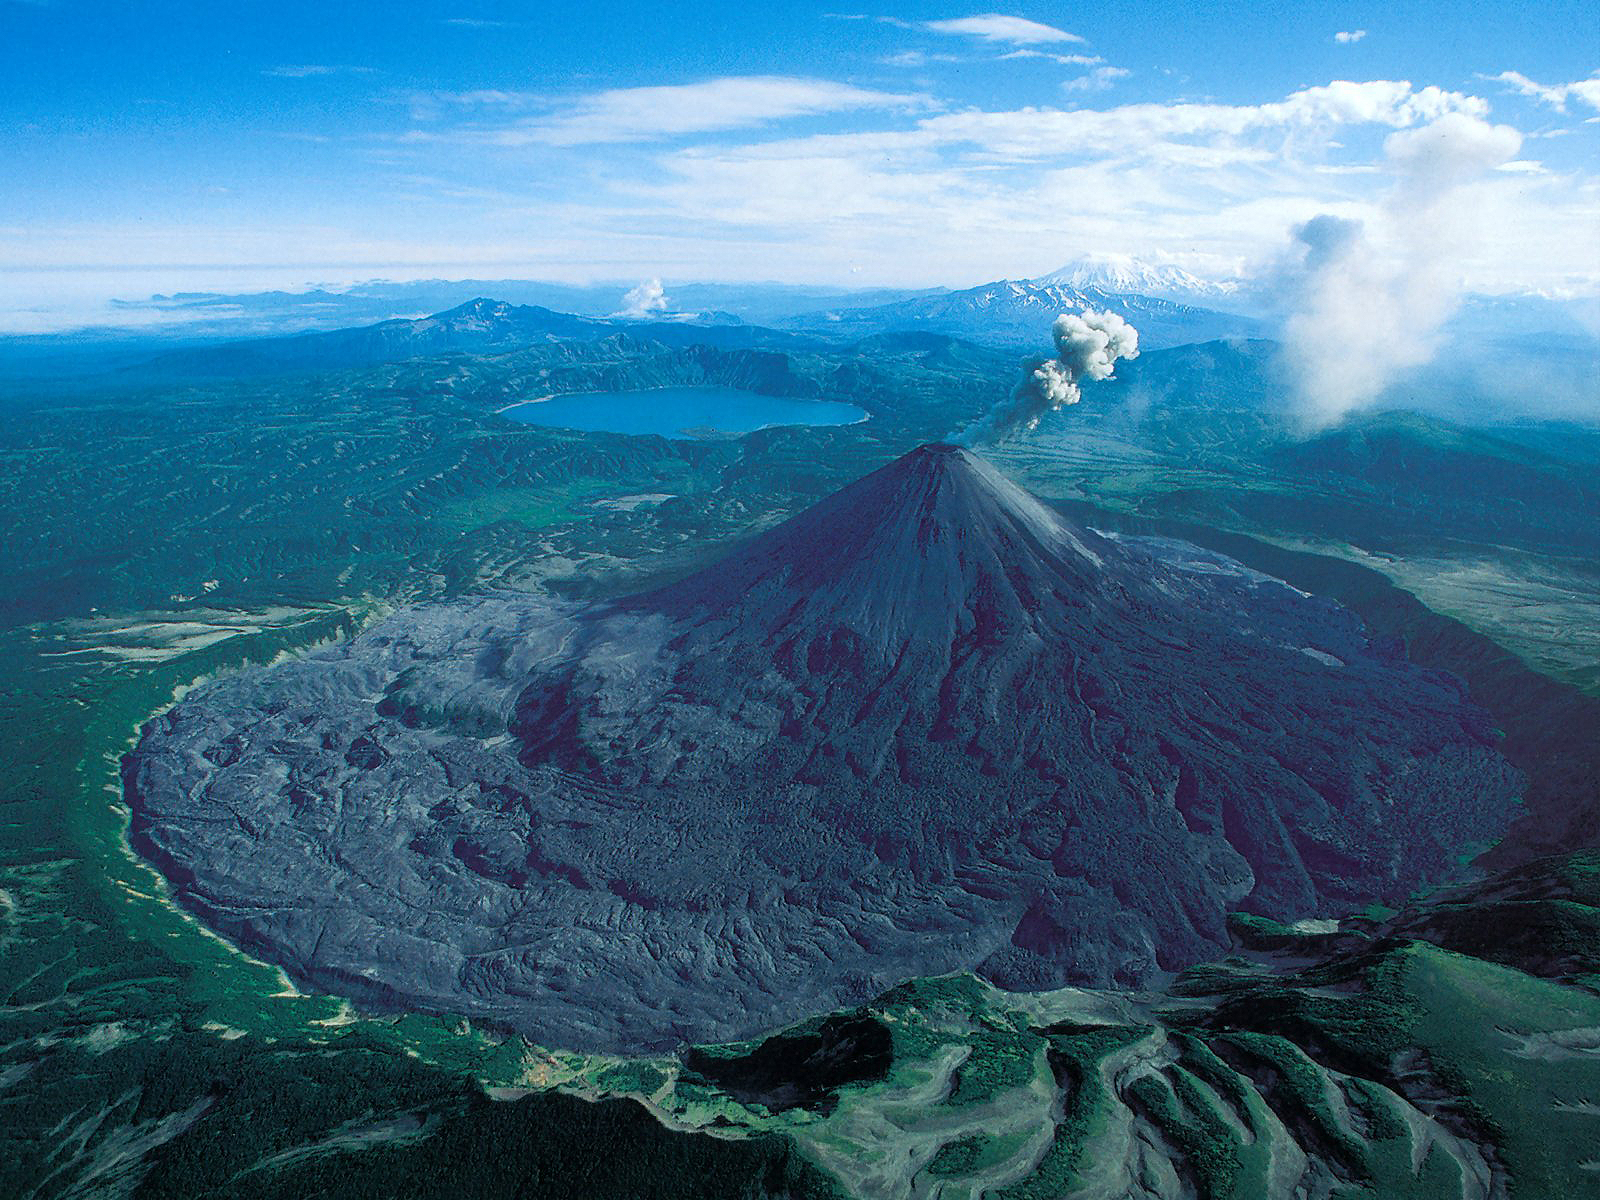 Previous, Nature - Volcanoes - Huge Volcano wallpaper